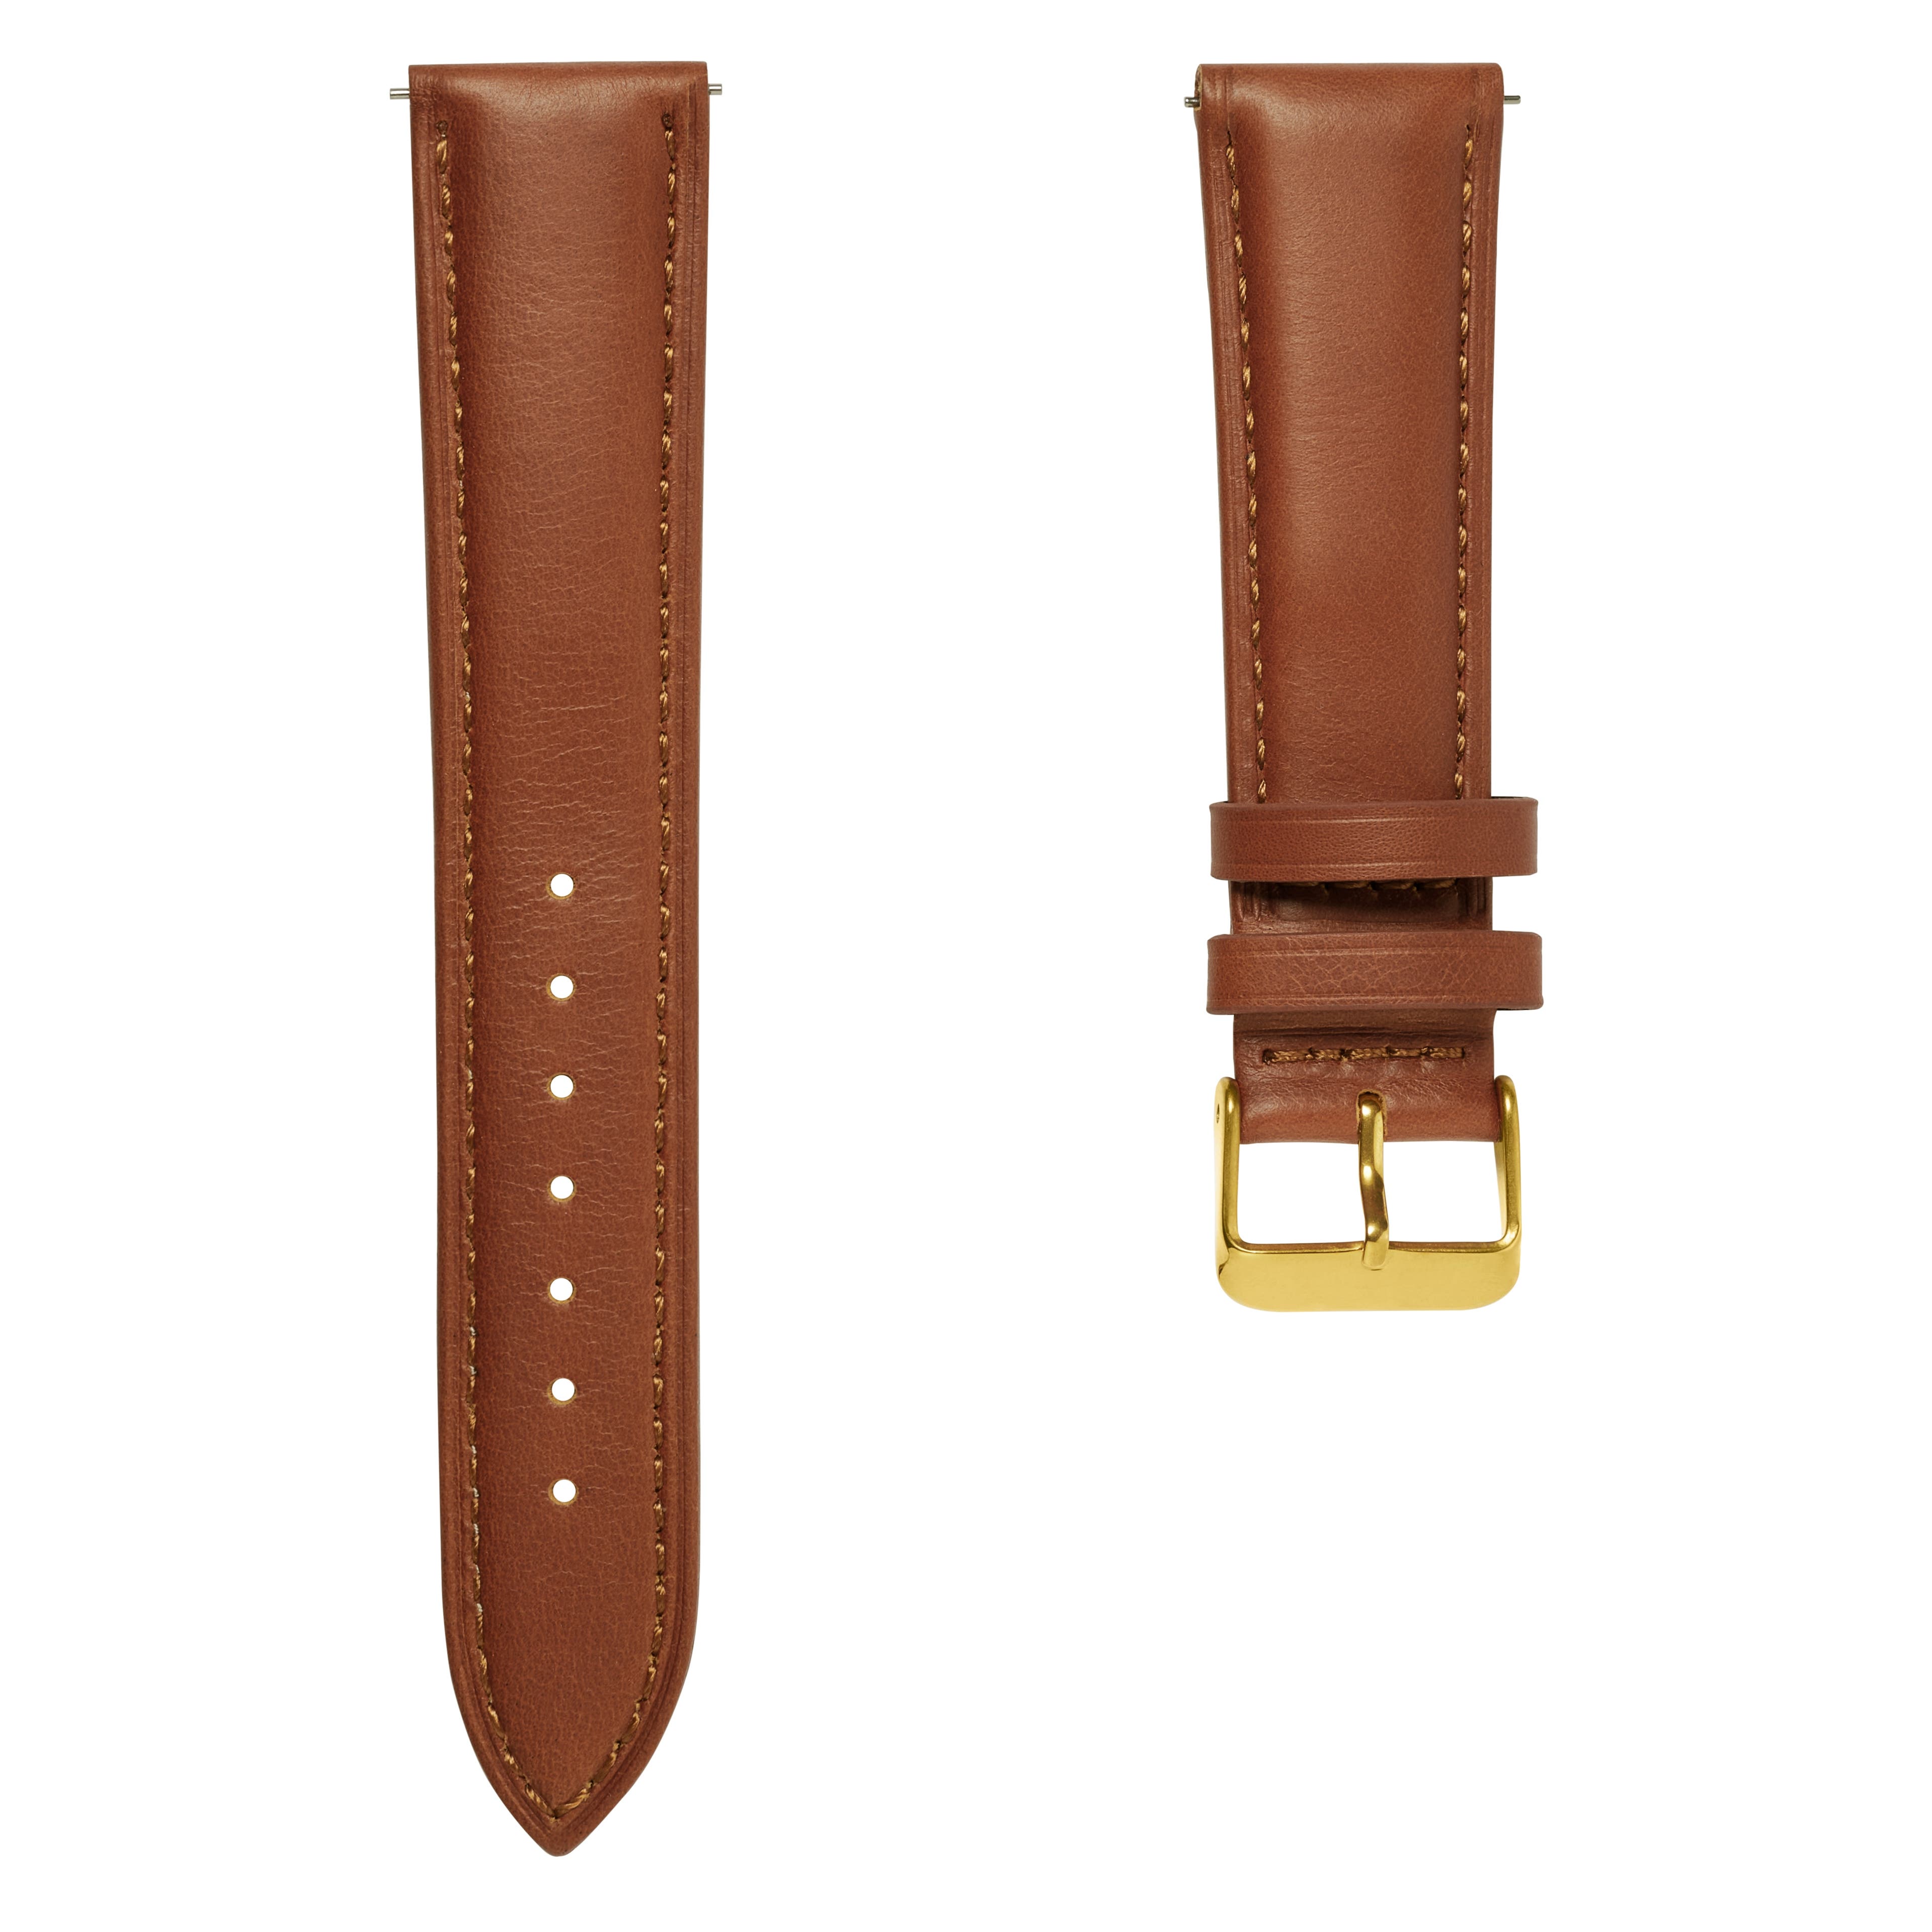 Bracelet de montre en cuir brun havane 18 mm avec boucle dorée - Attache rapide